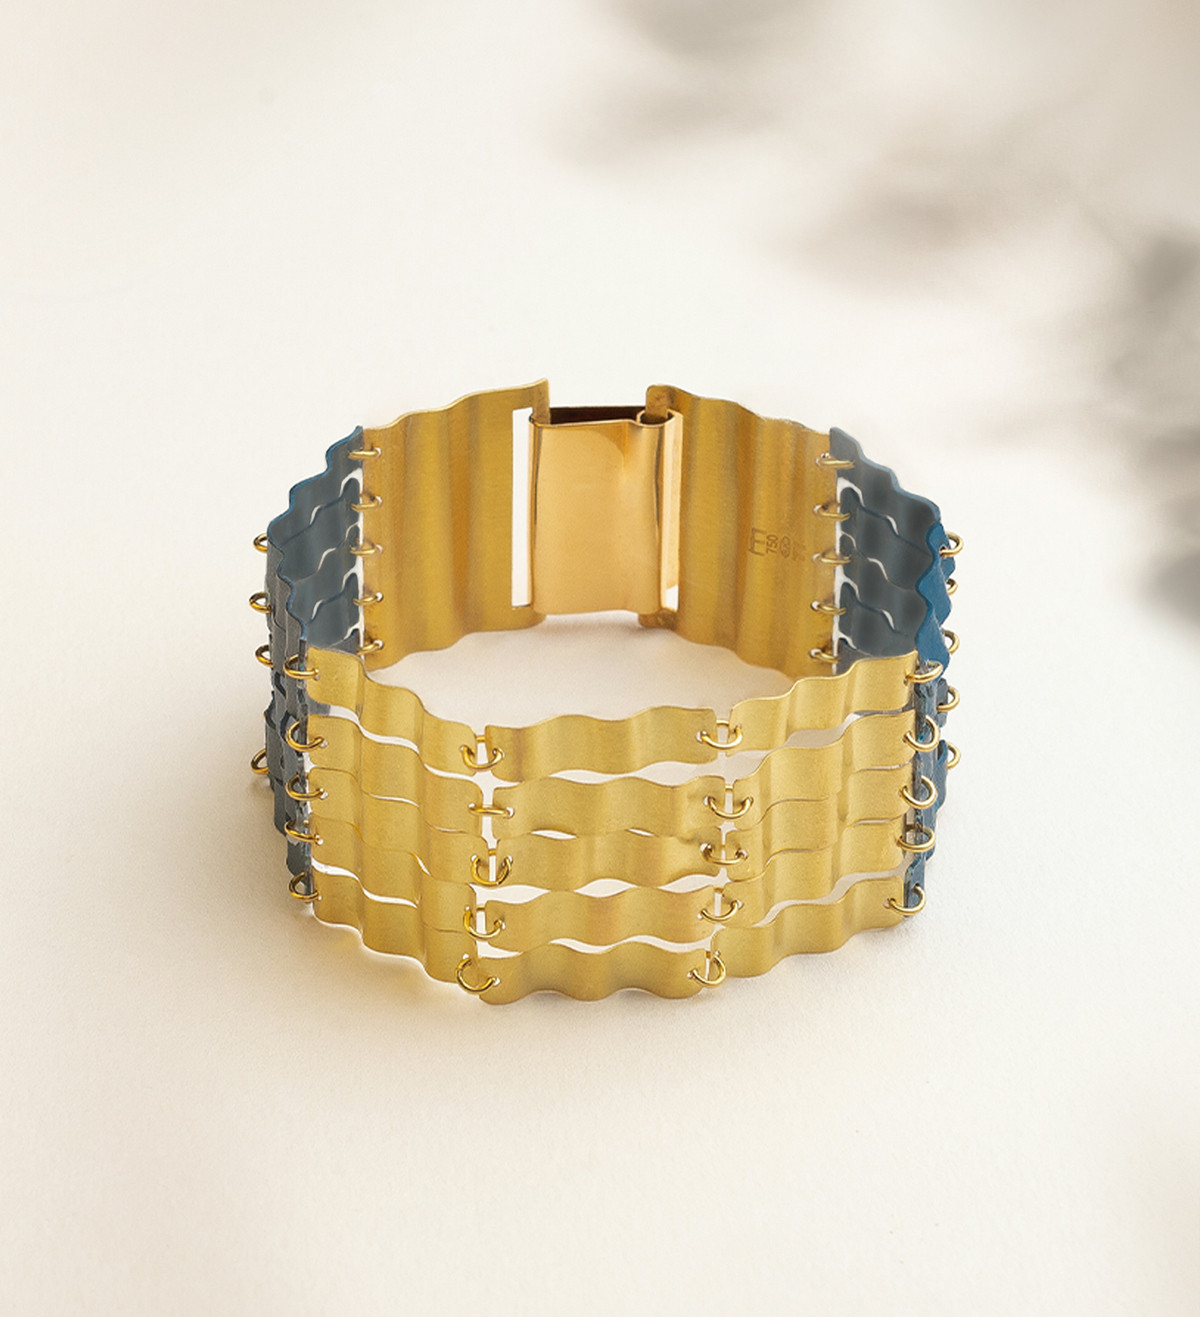 18k gold and titanium bracelet Aigua 5 bands 19cm